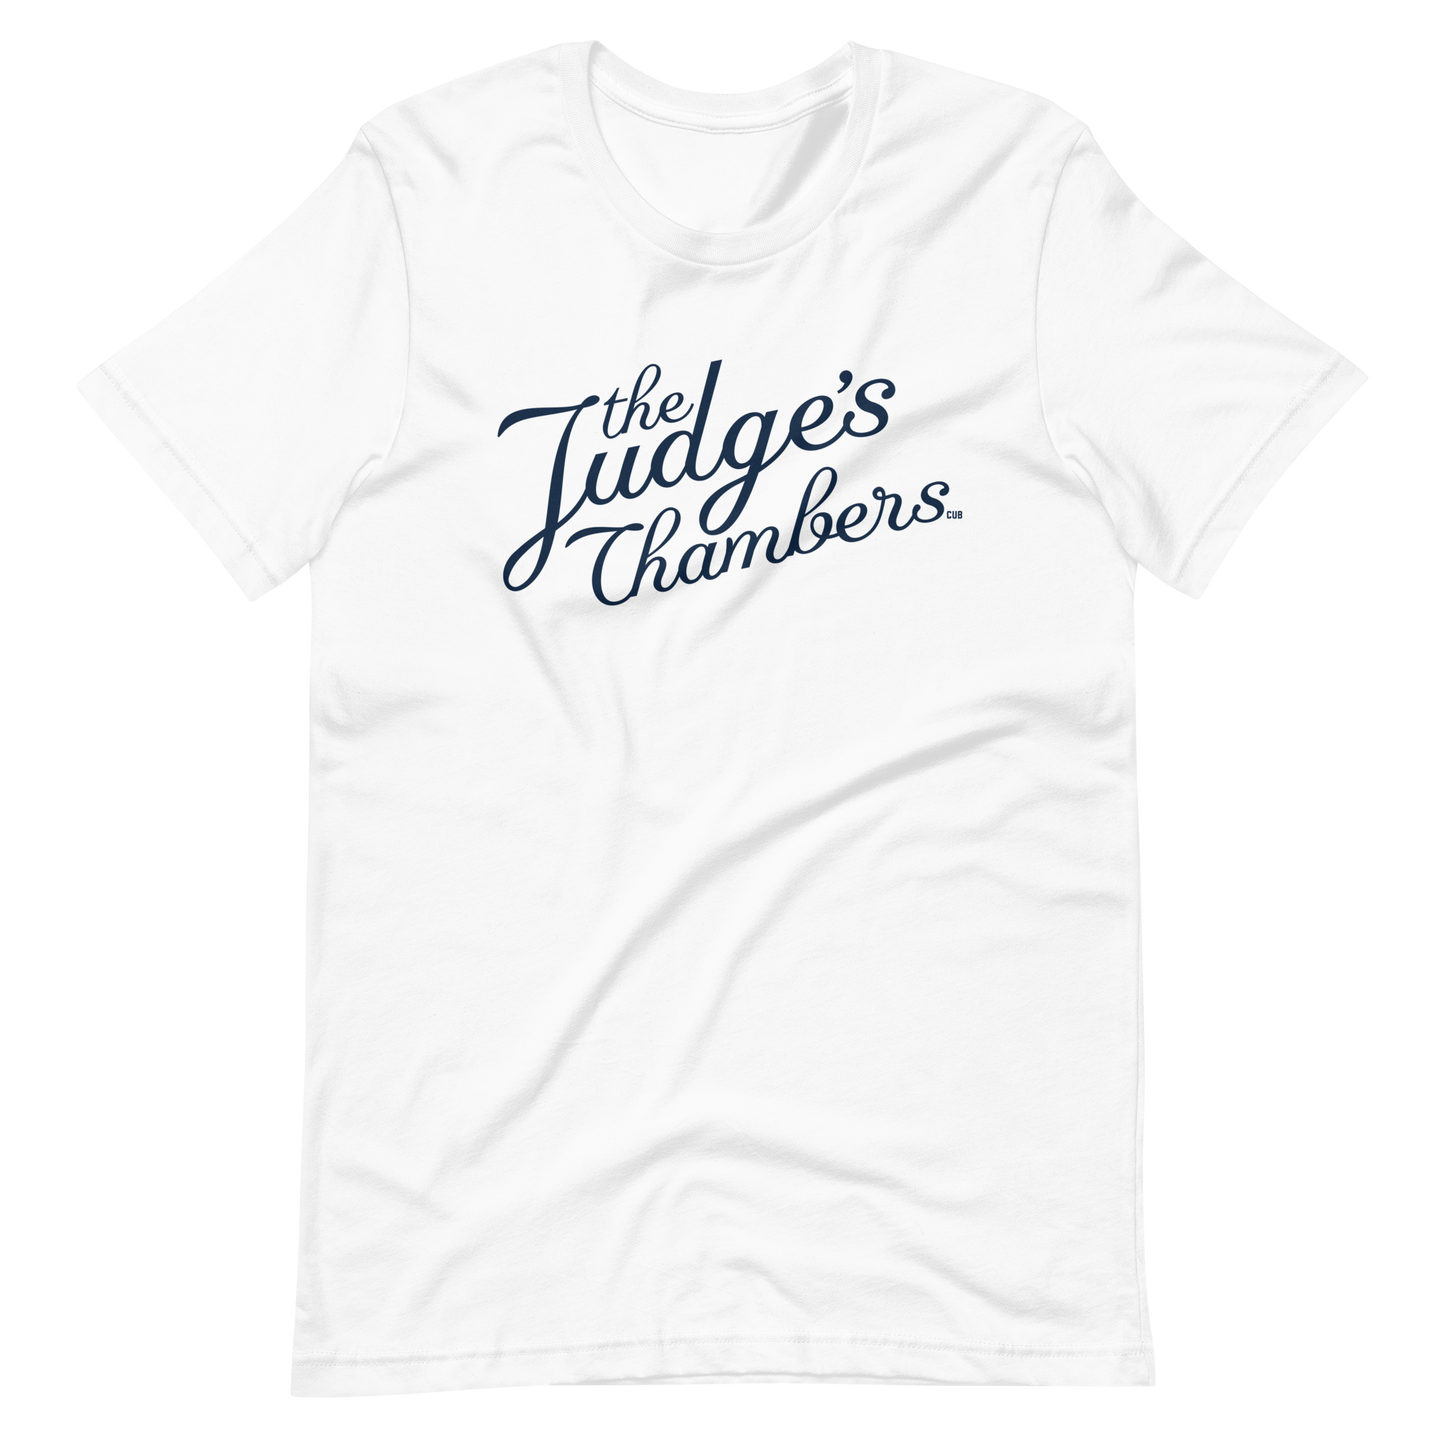 The Judge's Chambers T-Shirt